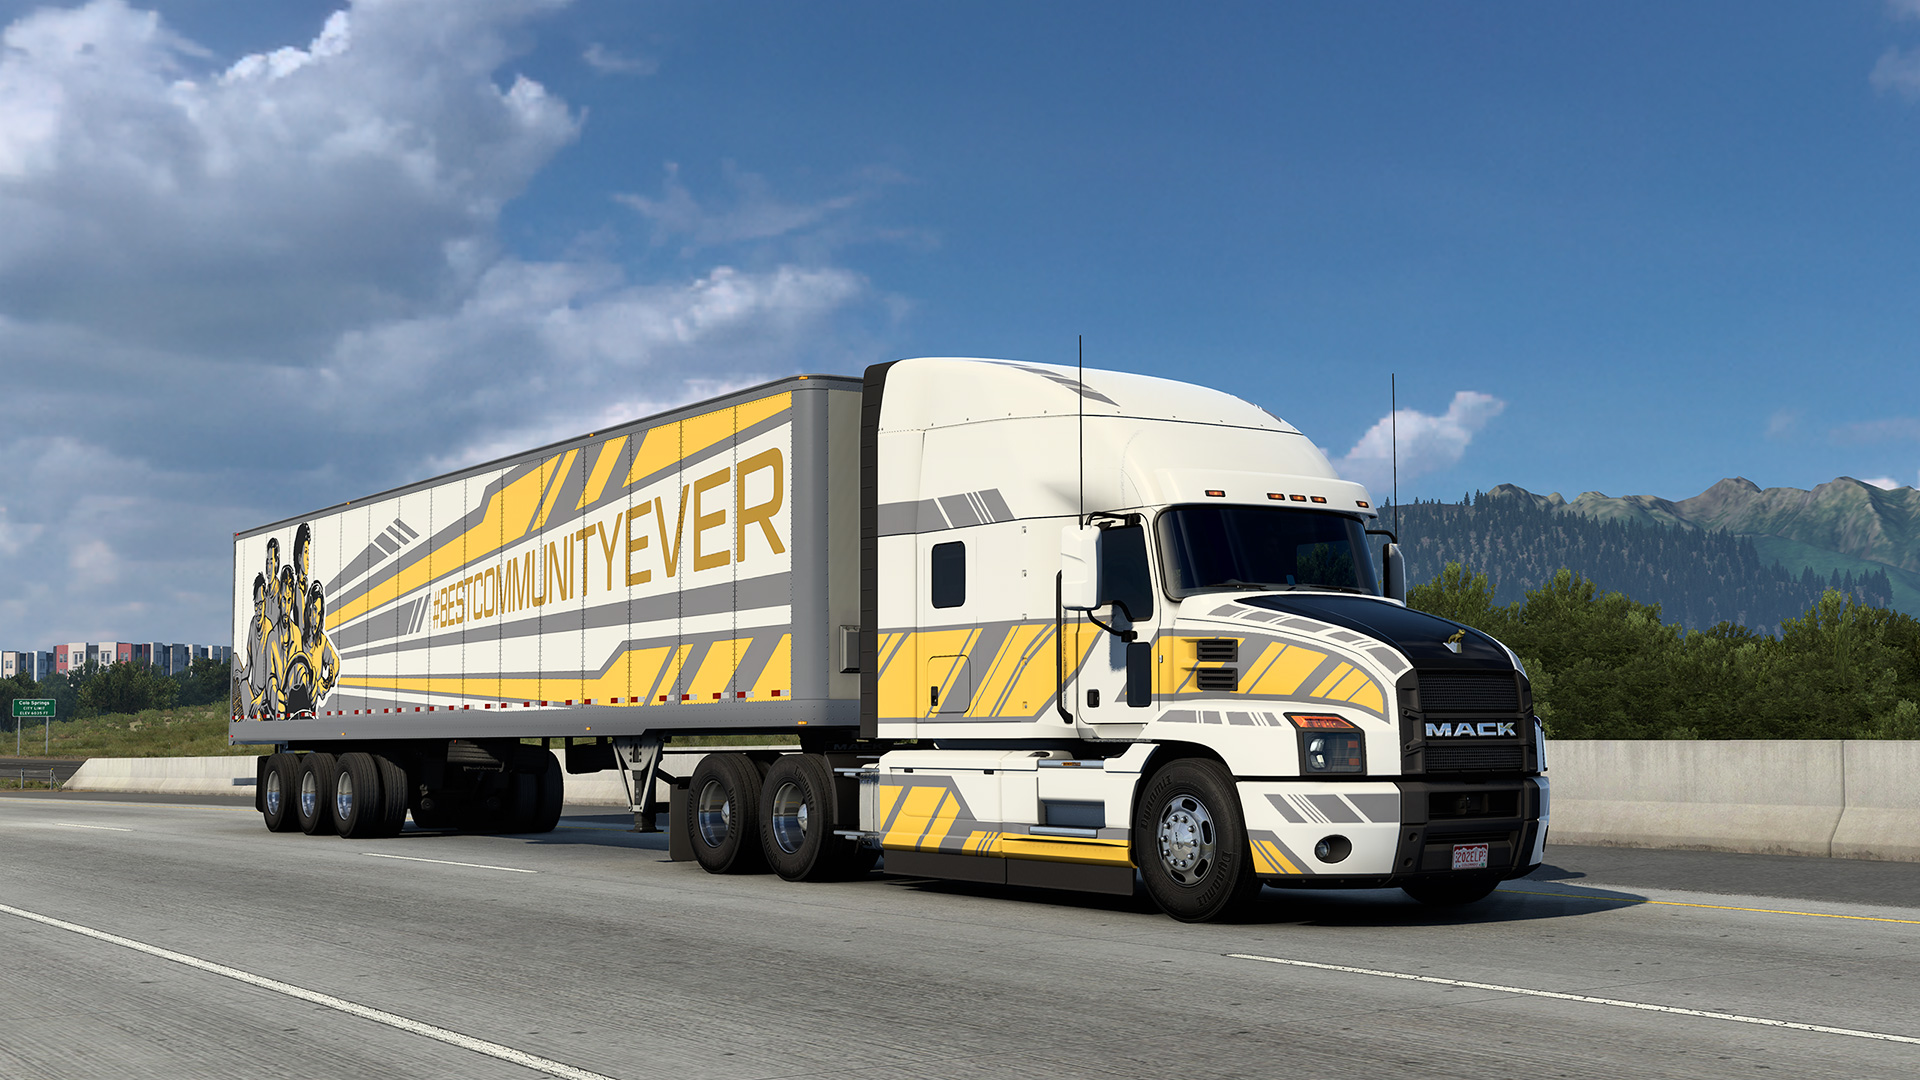 Етс атс. Грузовики в Португалии. #BESTCOMMUNITYEVER. Грузовики Португалия на поднятых. Truck and Logistics Simulator.